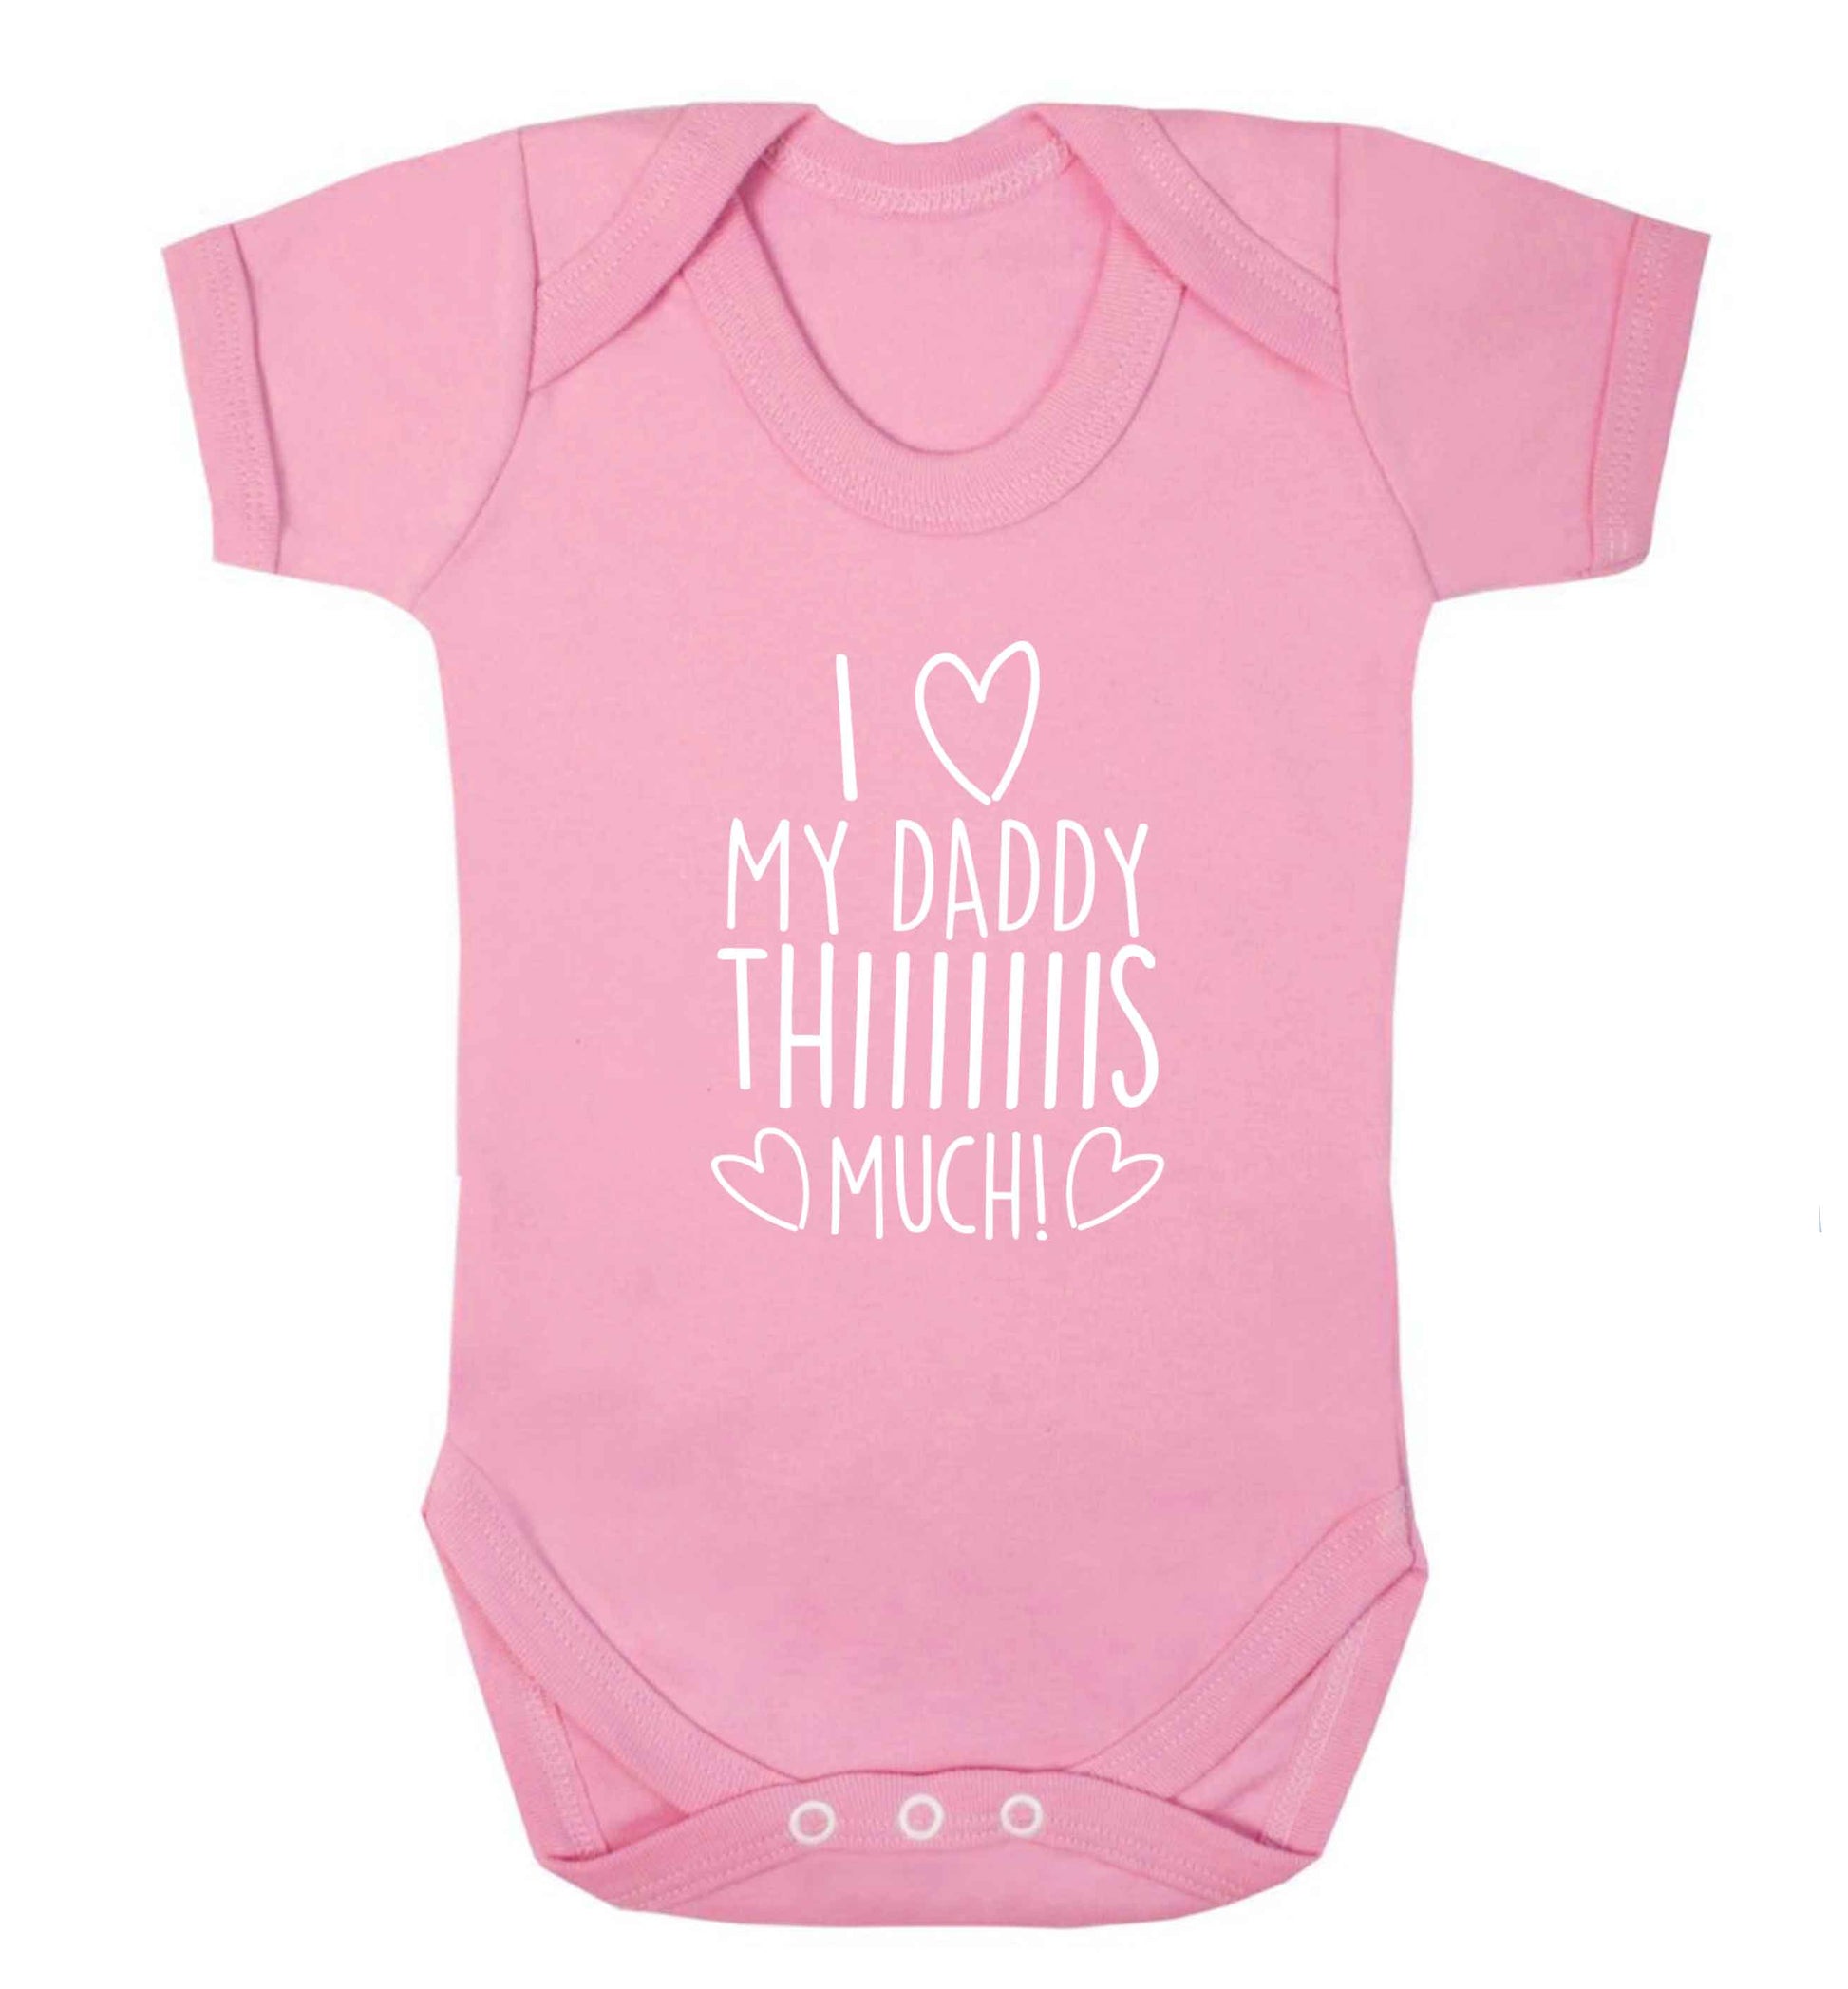 I love my daddy thiiiiis much! baby vest pale pink 18-24 months